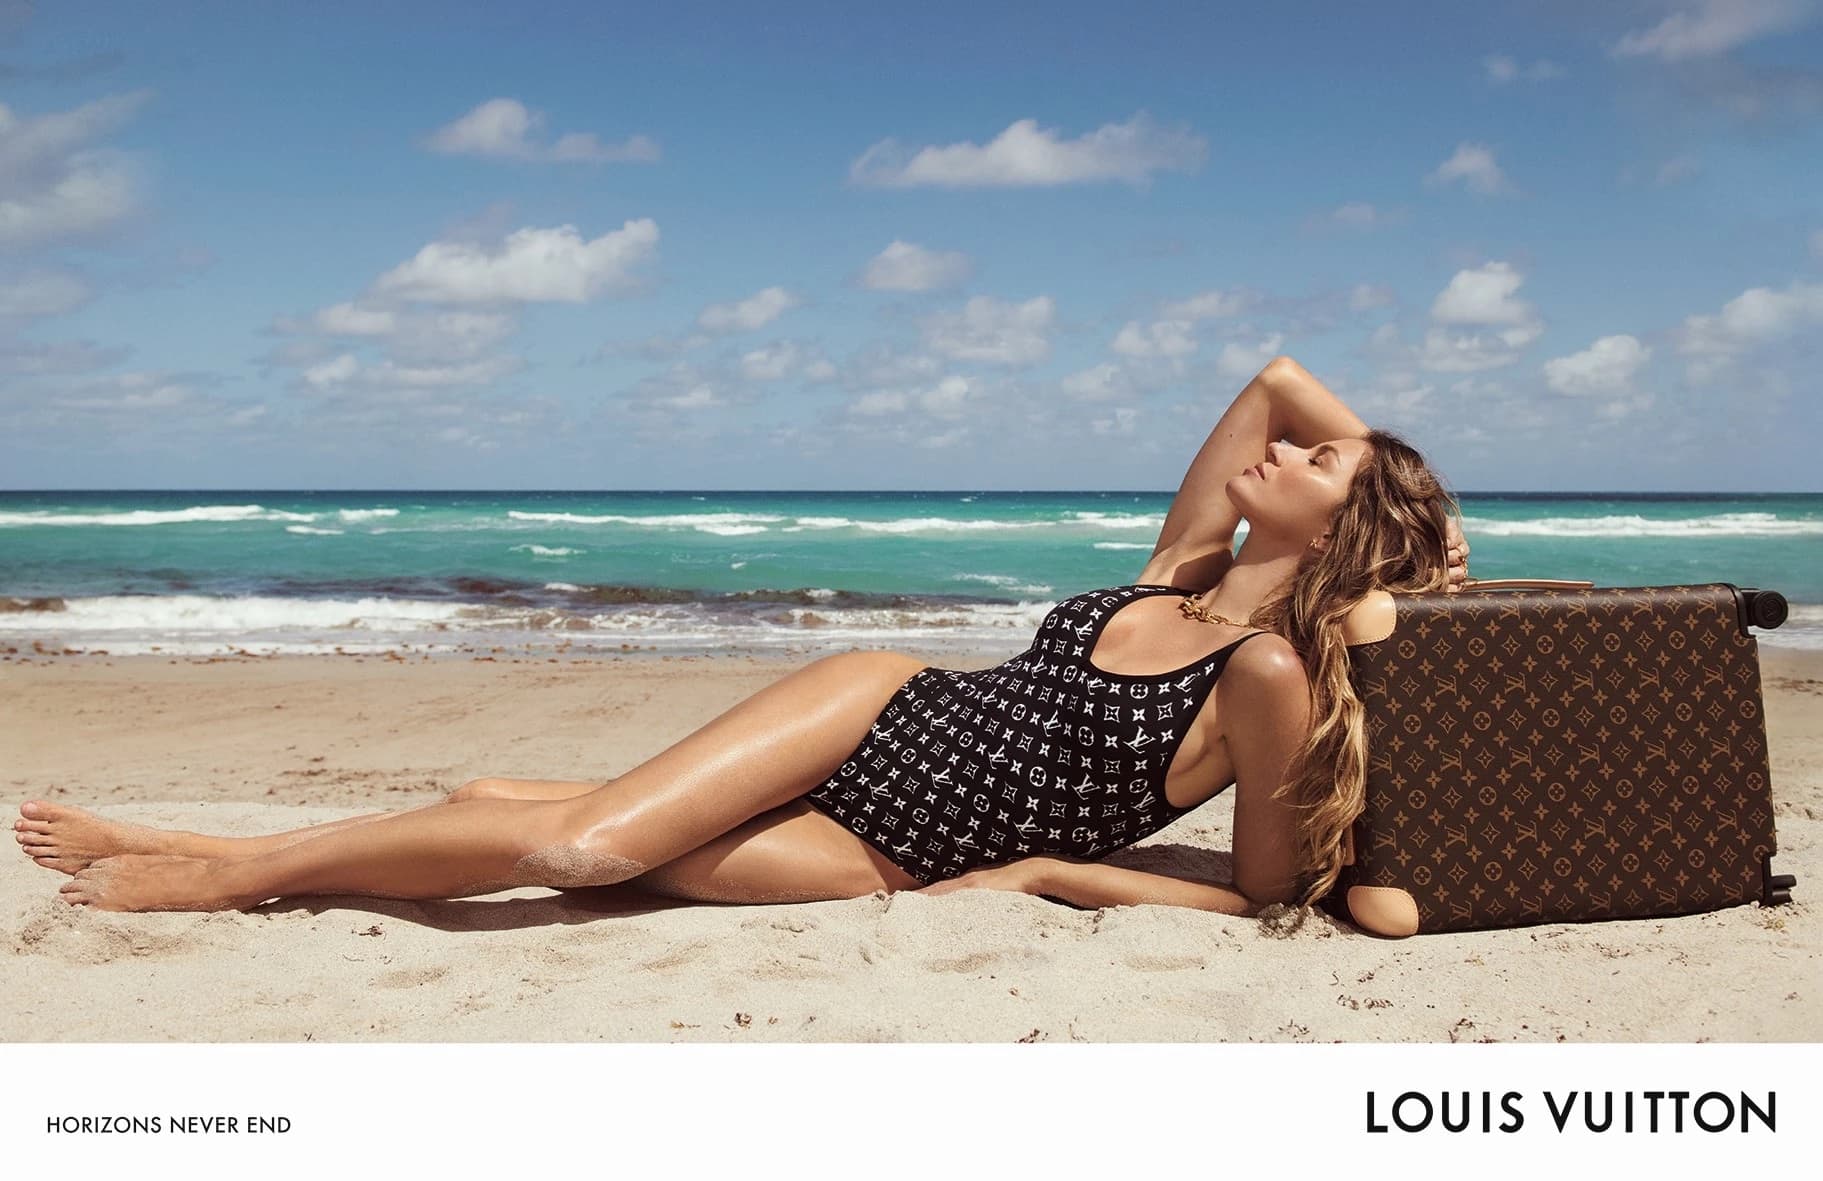 Louis Vuitton Unveils Horizon's Never End Campaign With Rapper